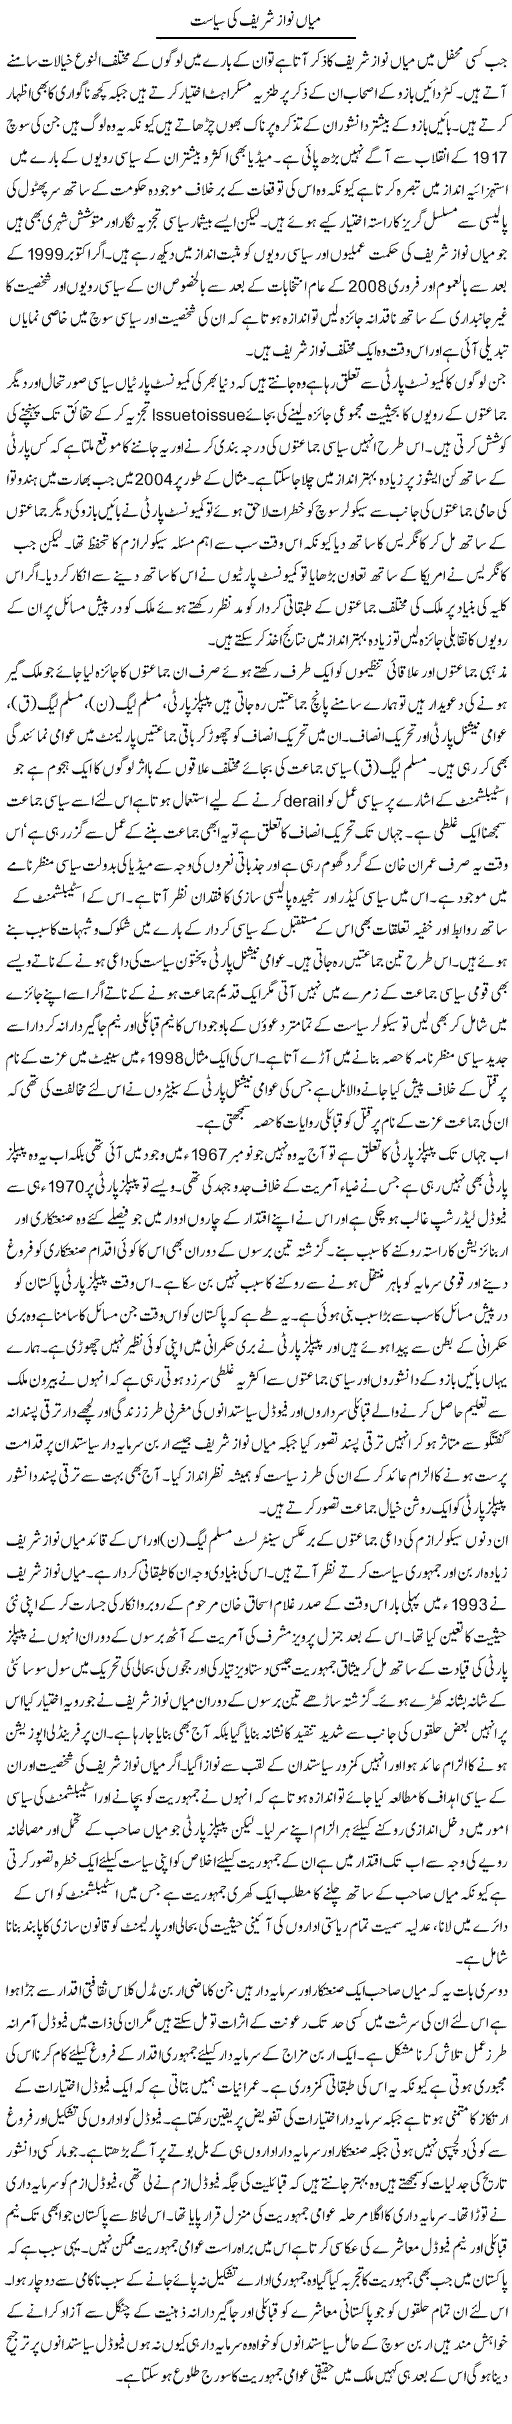 Politics of Nawaz Express Column Muqtada Mansoor 18 August 2011